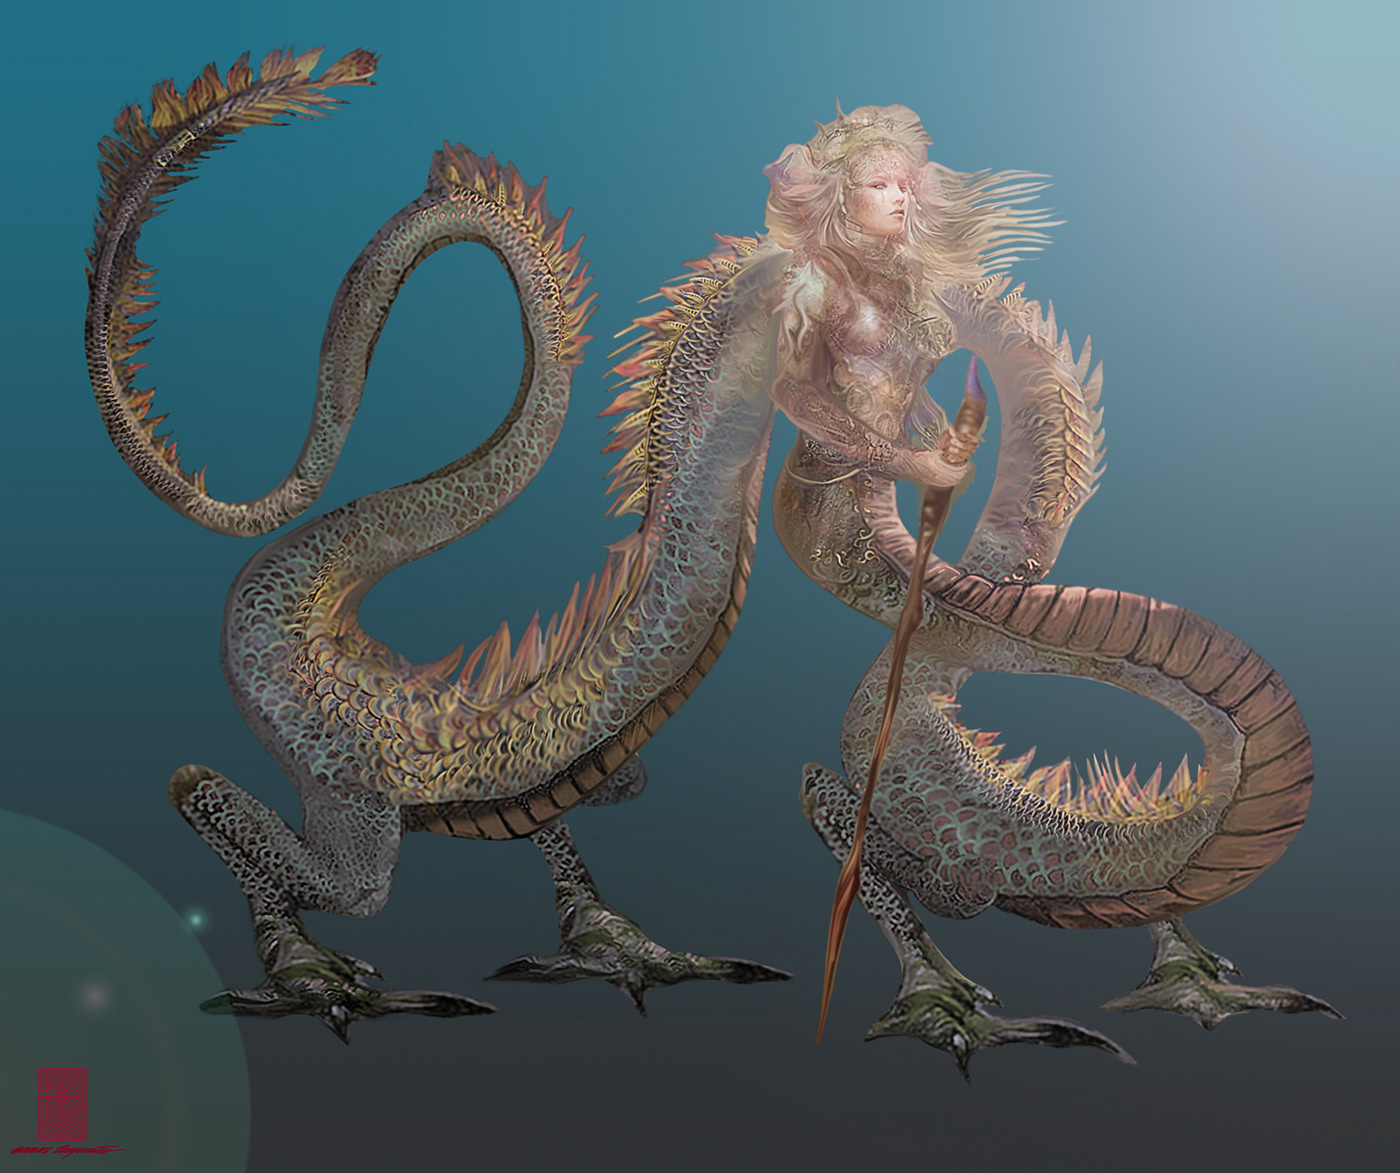 Fantasy Myth royal kingdom characters fantasy art Character design  dragon angel girl